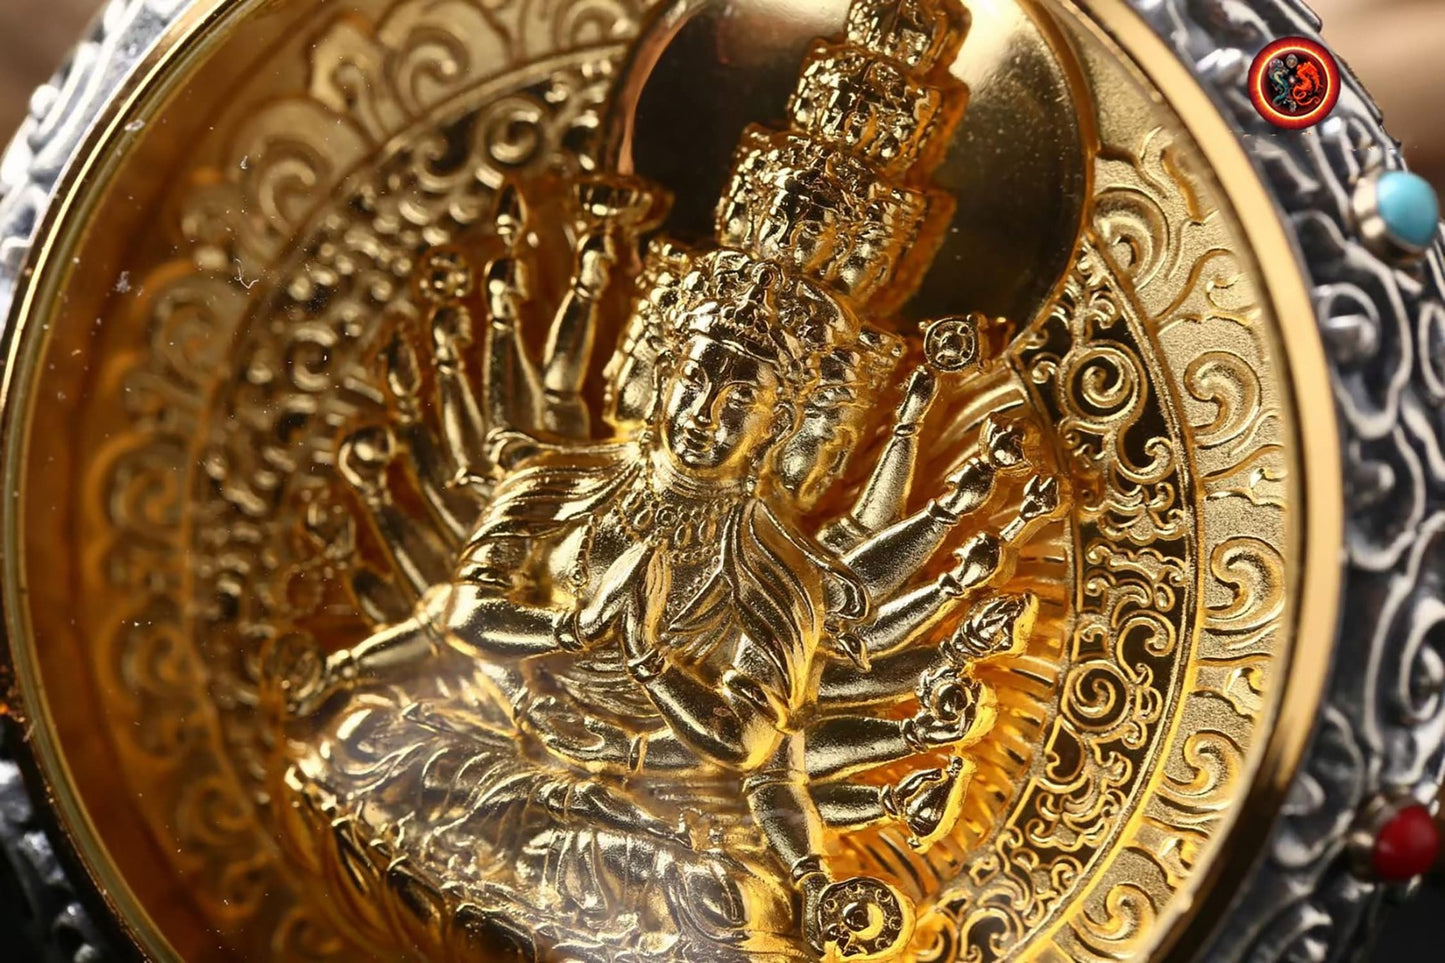 Pendentif bouddha. Bodhisattva Chenrezig/ Guan Yin sous sa forme à milles brasAmulette de protection du bouddhisme vajrayana esoterique tibétain. - obsidian dragon